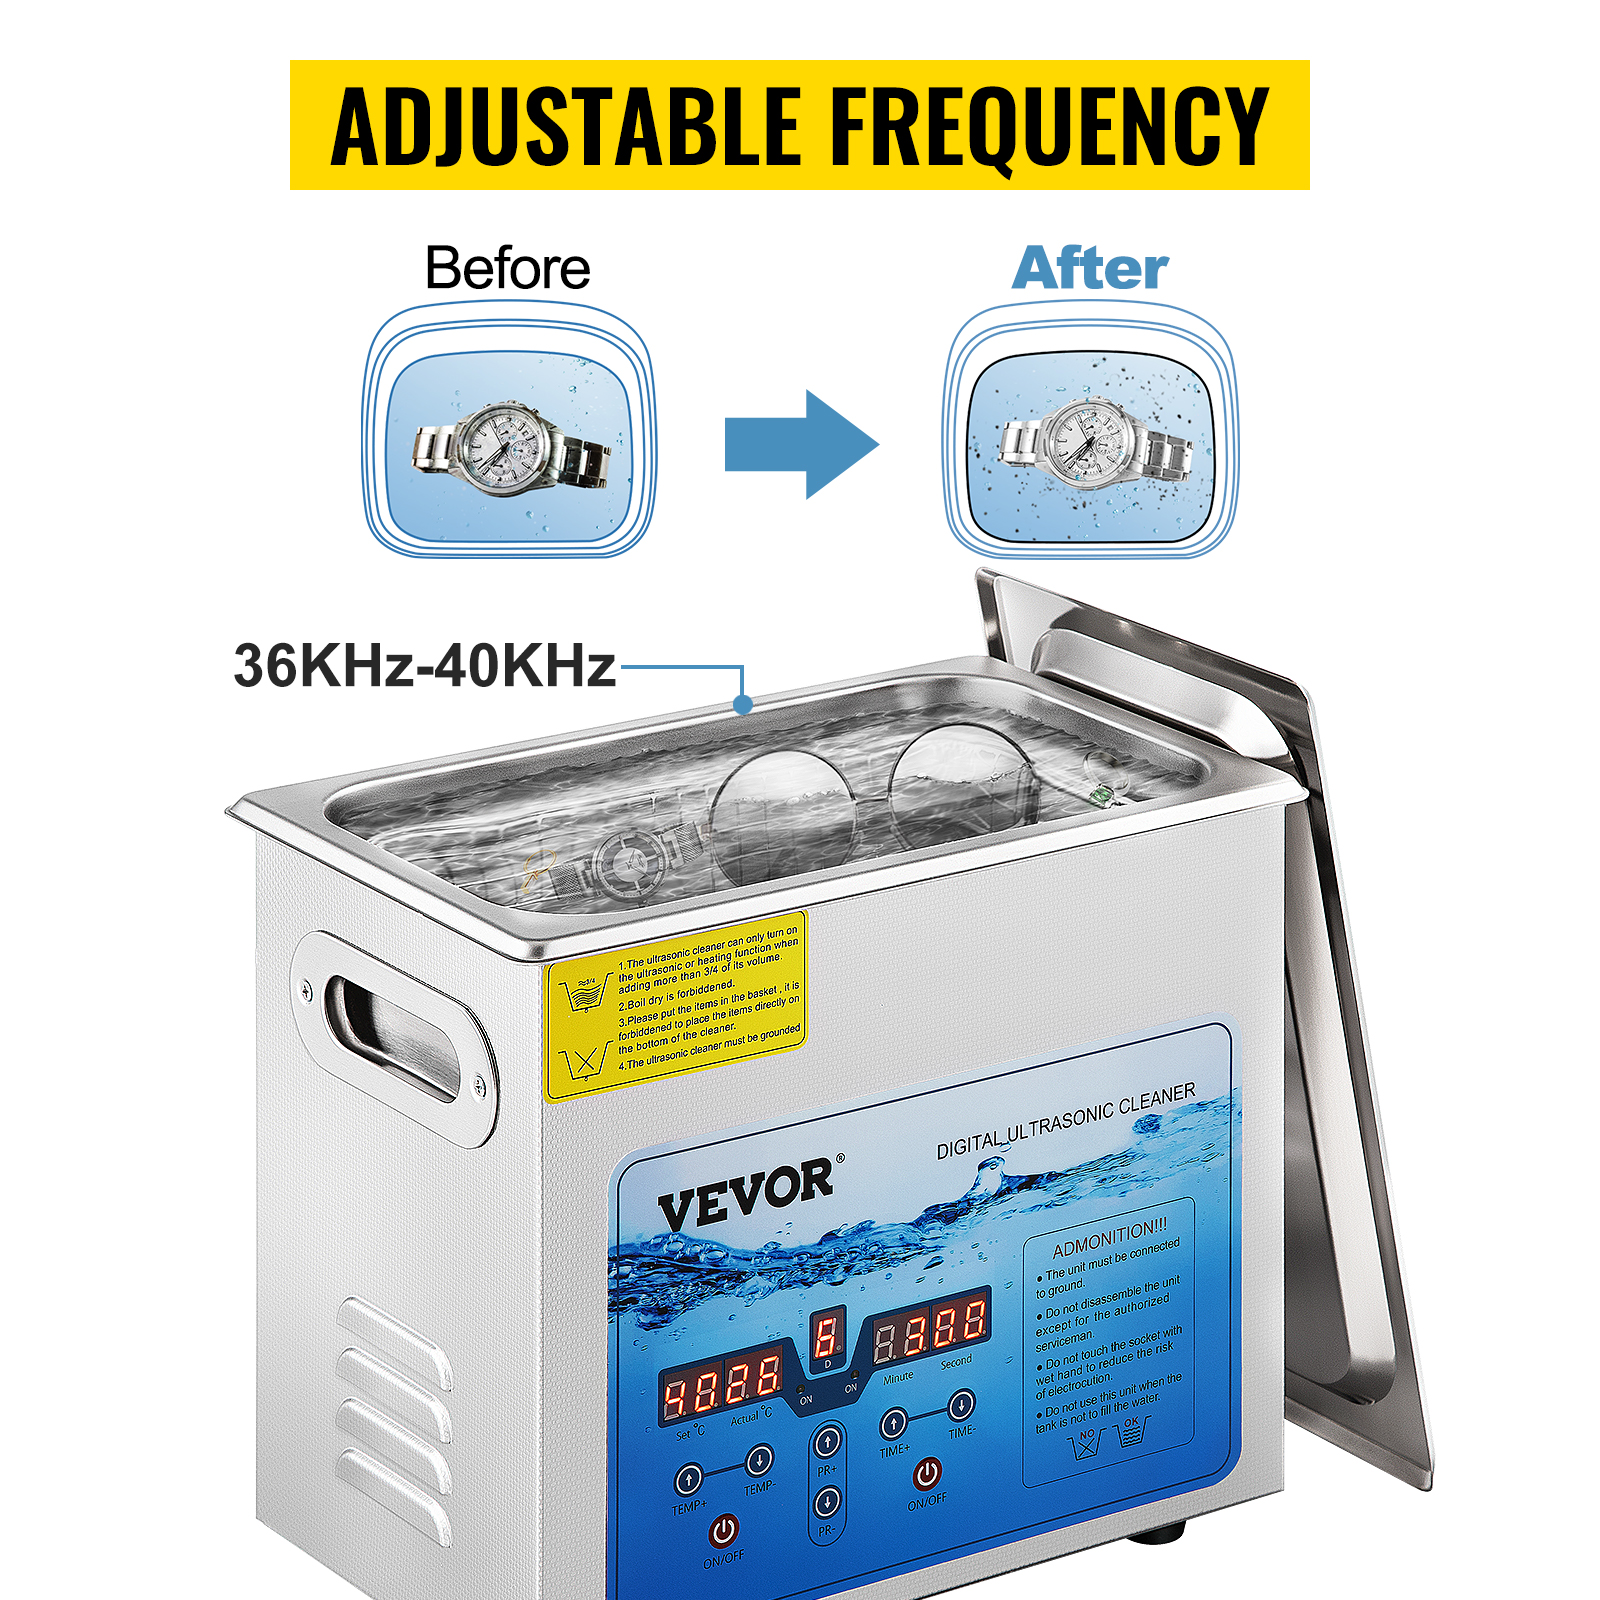 VEVOR Ultrasonic Cleaner, 36KHz~40KHz Adjustable Frequency